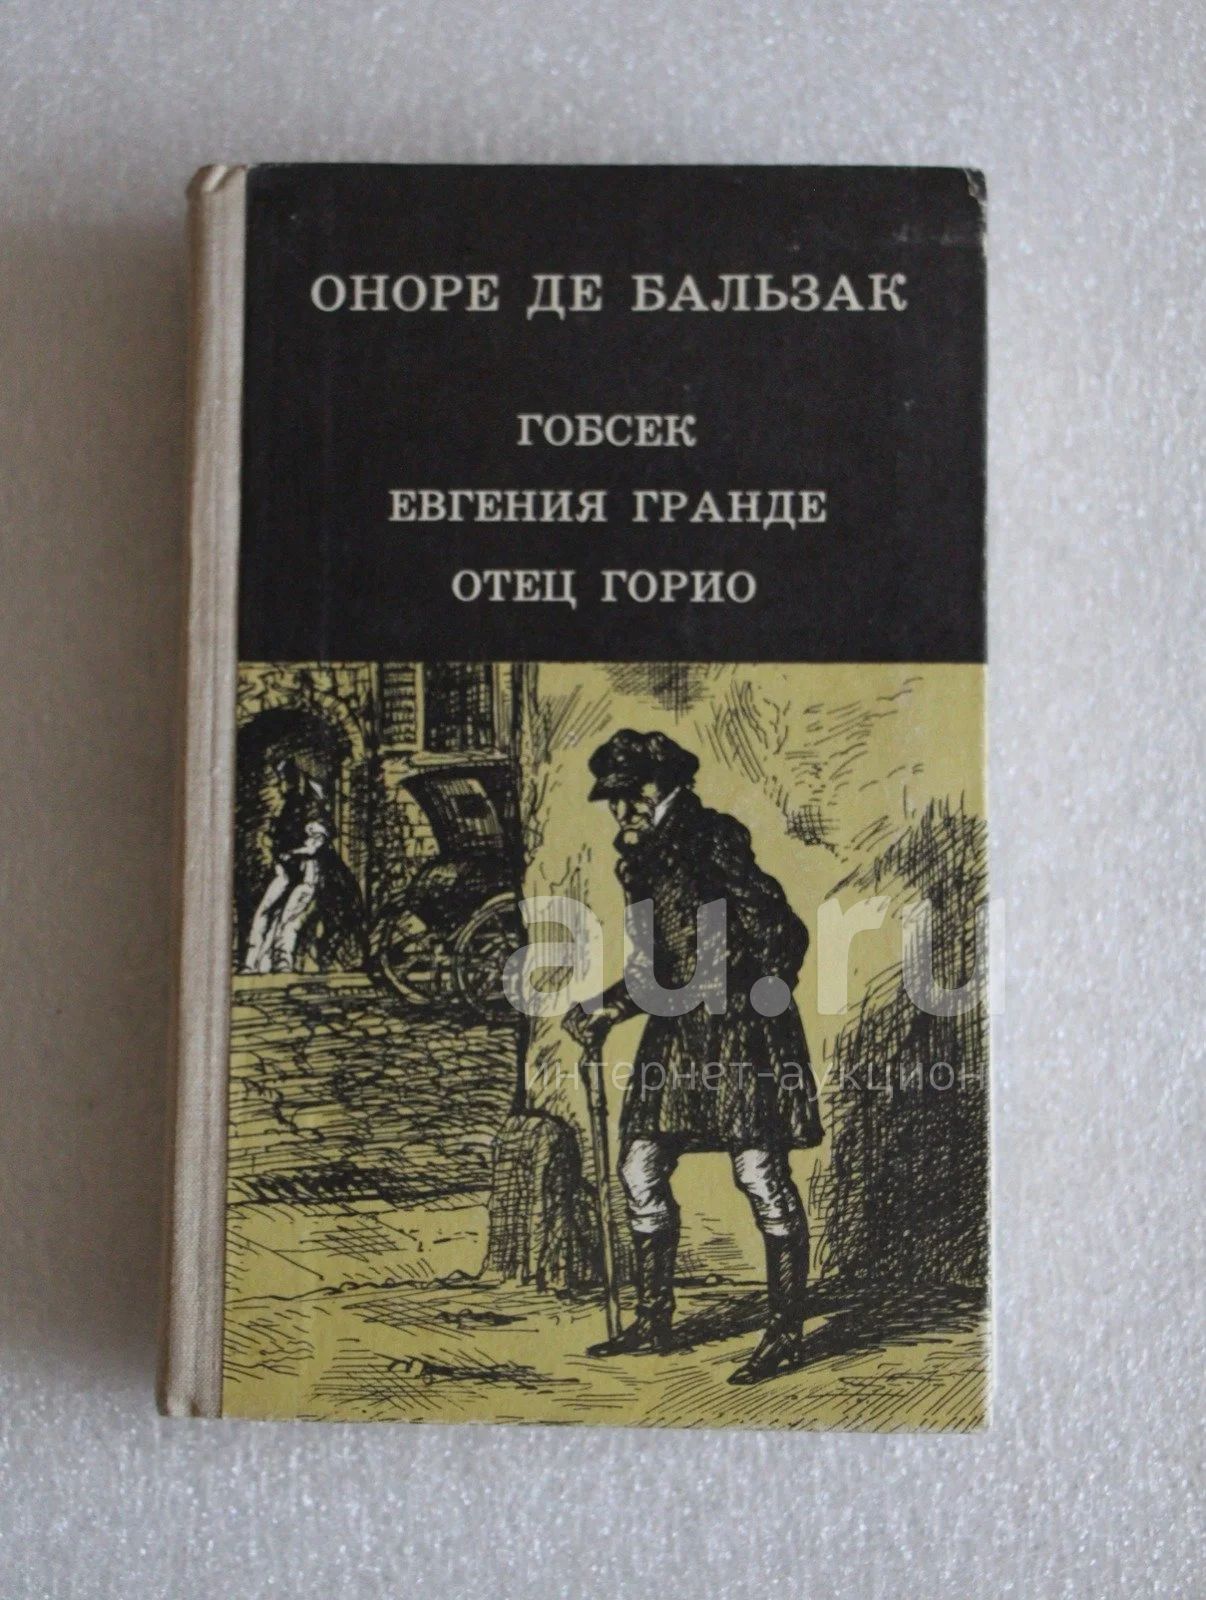 Книга отец горио. Книга Бальзак Гобсек 1979. Гобсек Оноре де Бальзак книга. Оноре де Бальзак отец. Оноре де Бальзак "отец Горио".